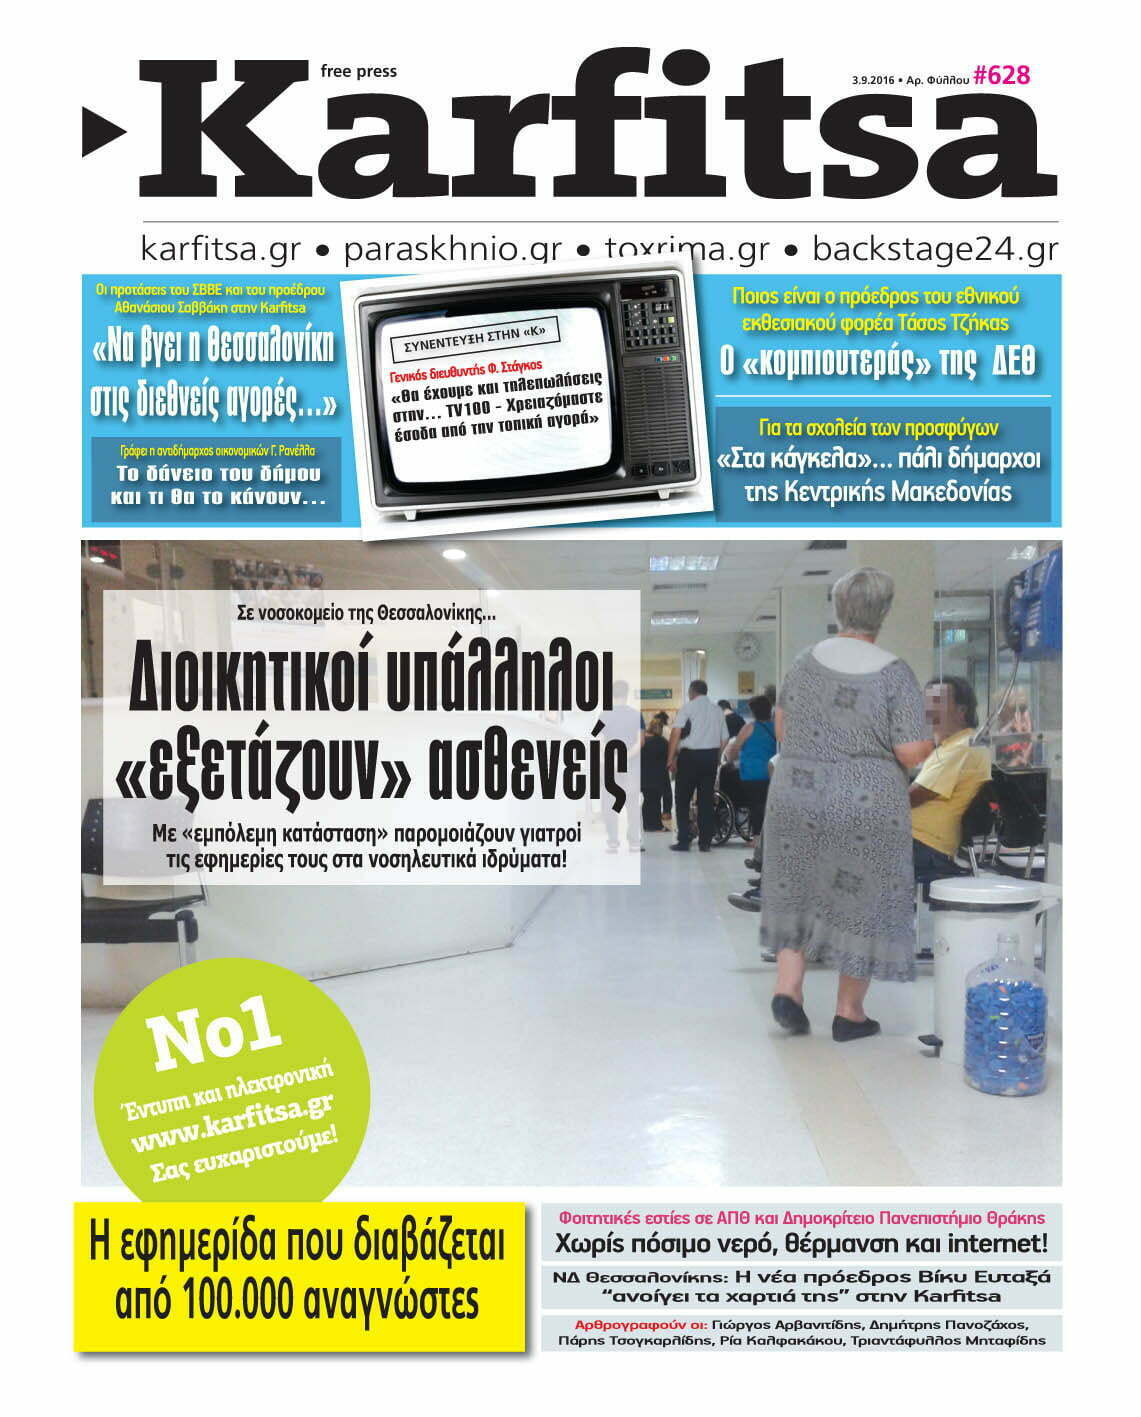 Διαβάστε ολόκληρη την εφημερίδα KARFITSA με ένα… ΚΛΙΚ!